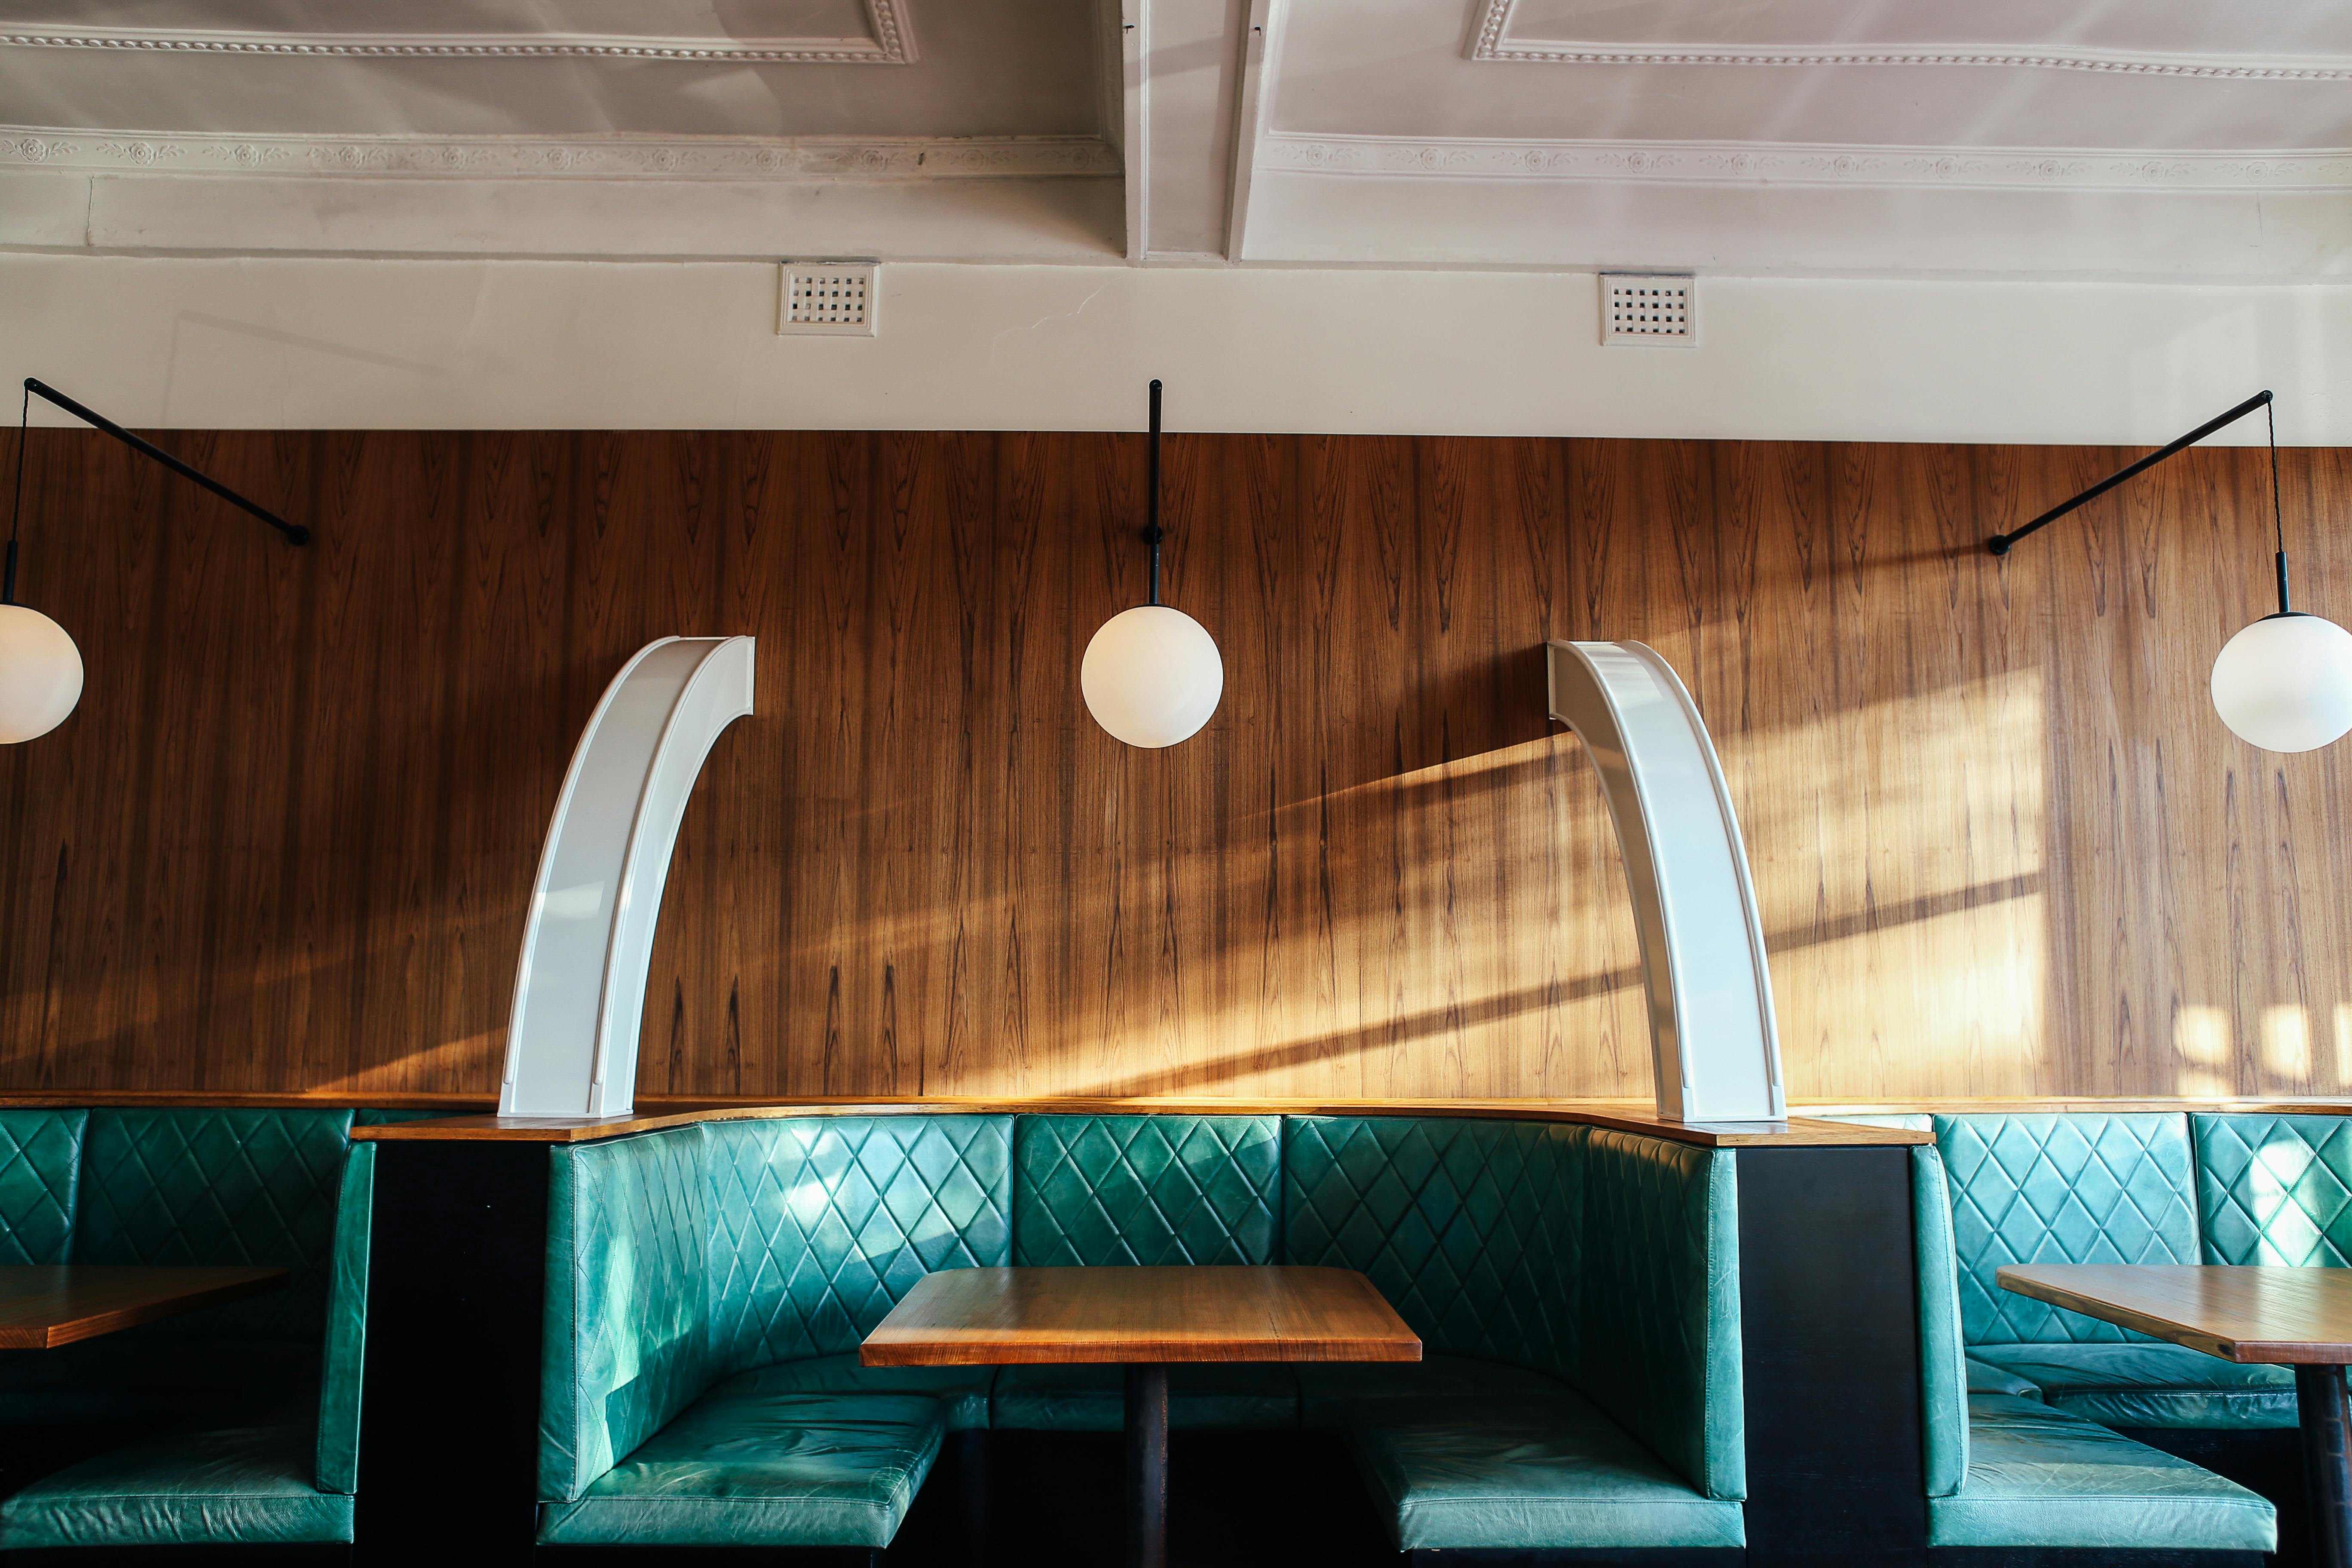 Interior de una cafetería | Fuente: Pexels